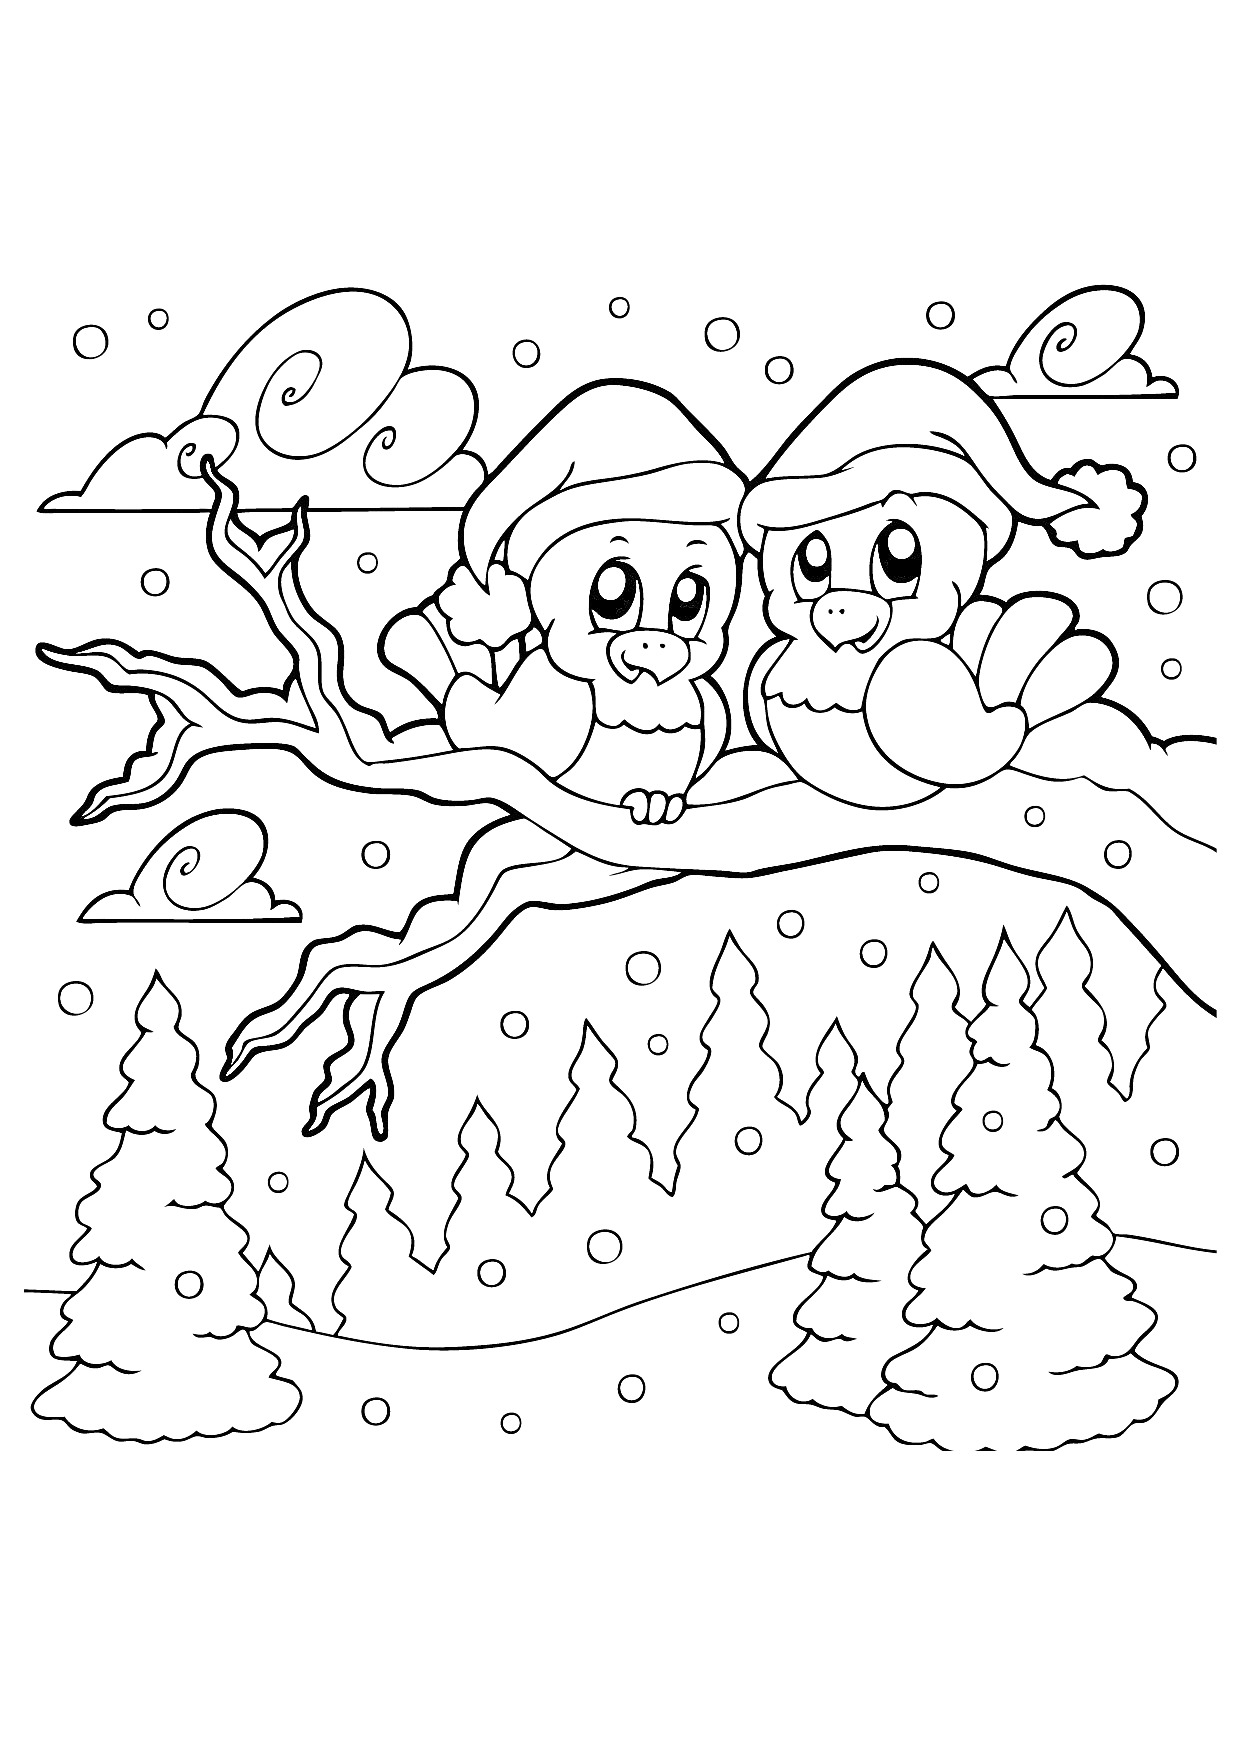 Две совы в шапках Санты на ветке дерева зимой, снежинки, елки и облака на заднем плане